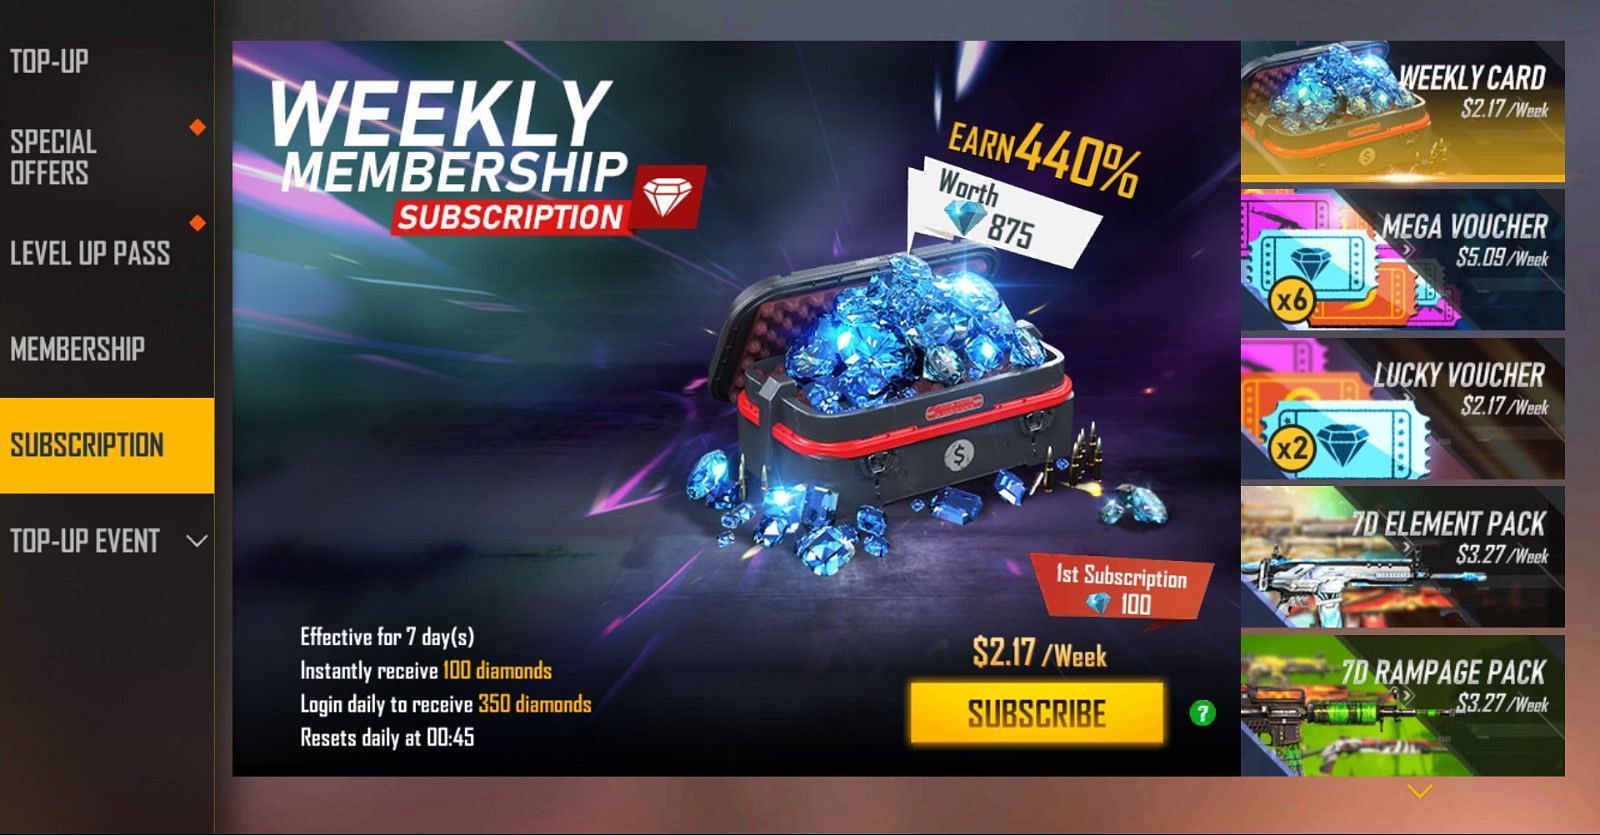 Weekly membership subscription costs $2.17/week (Image via Garena)